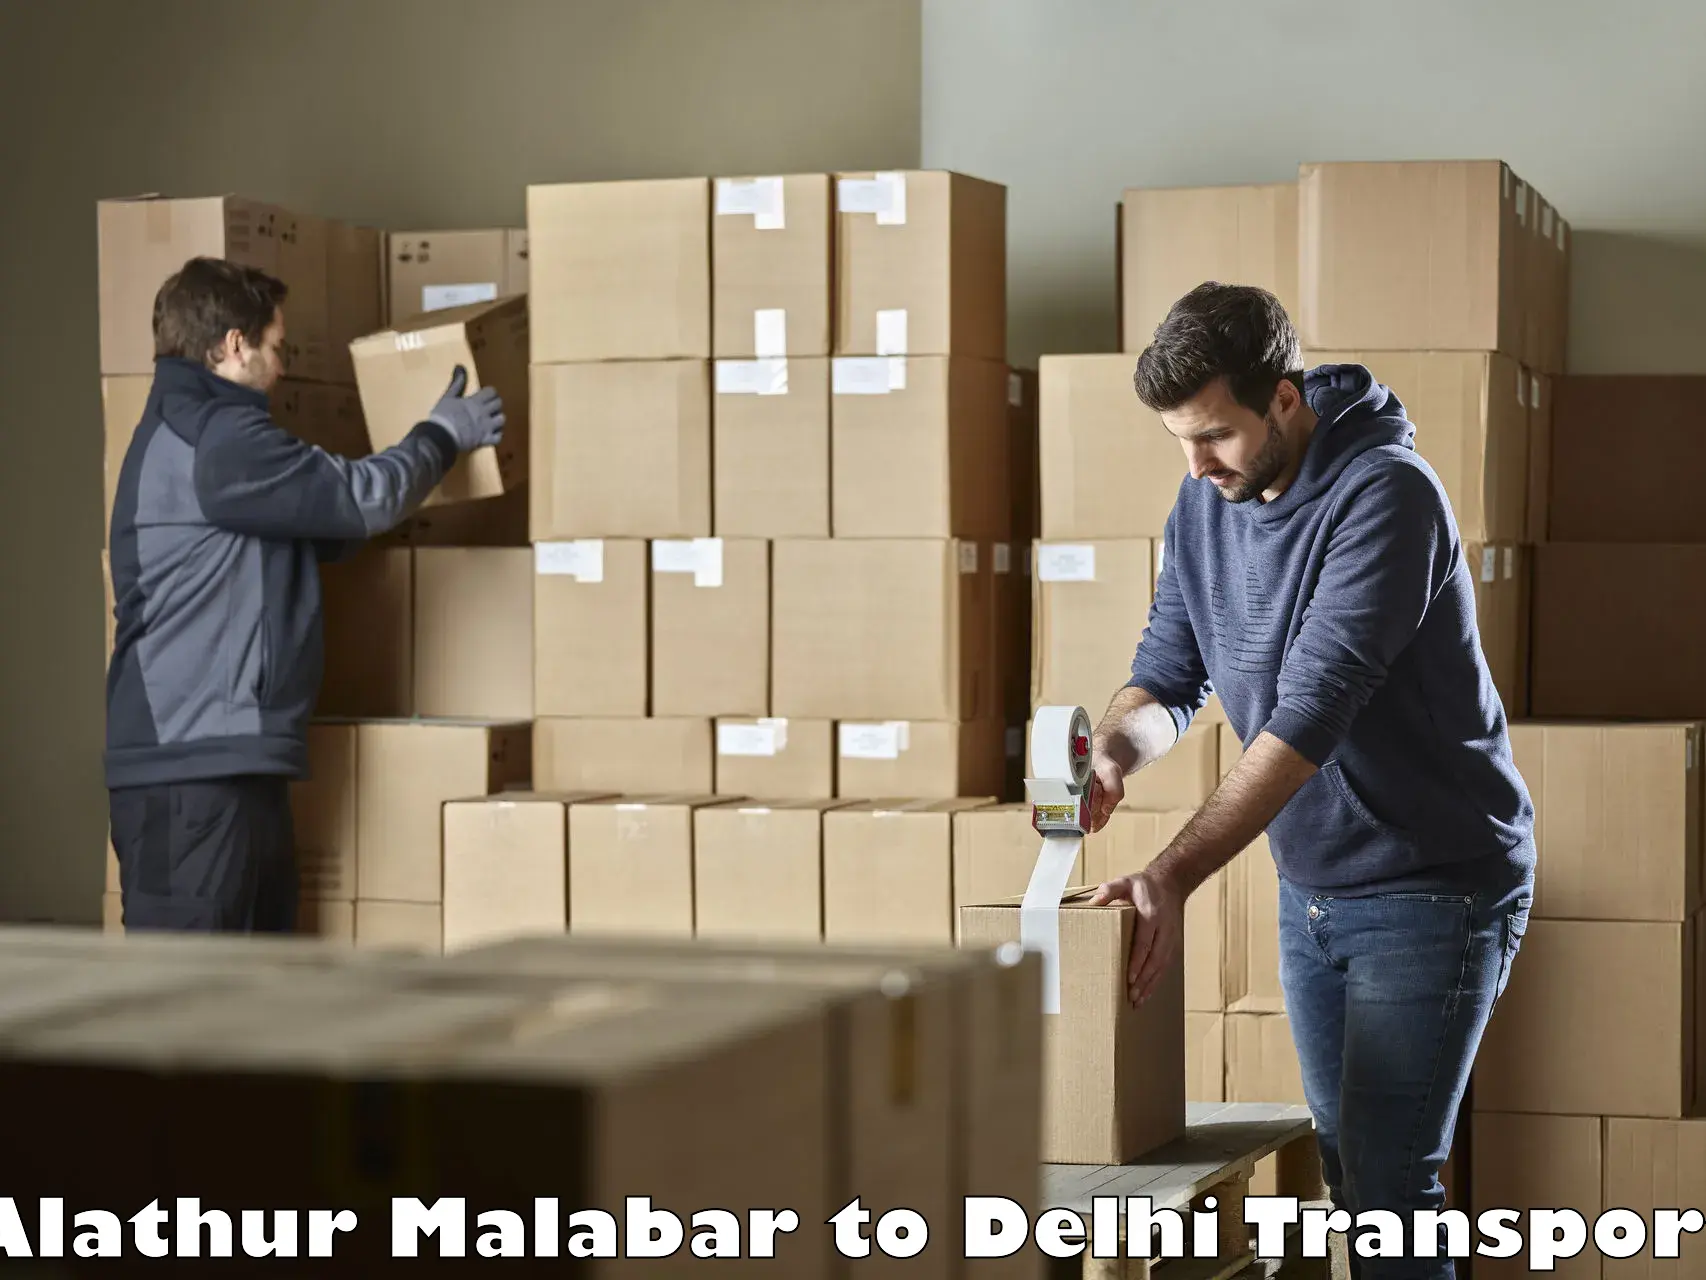 Daily parcel service transport Alathur Malabar to Burari